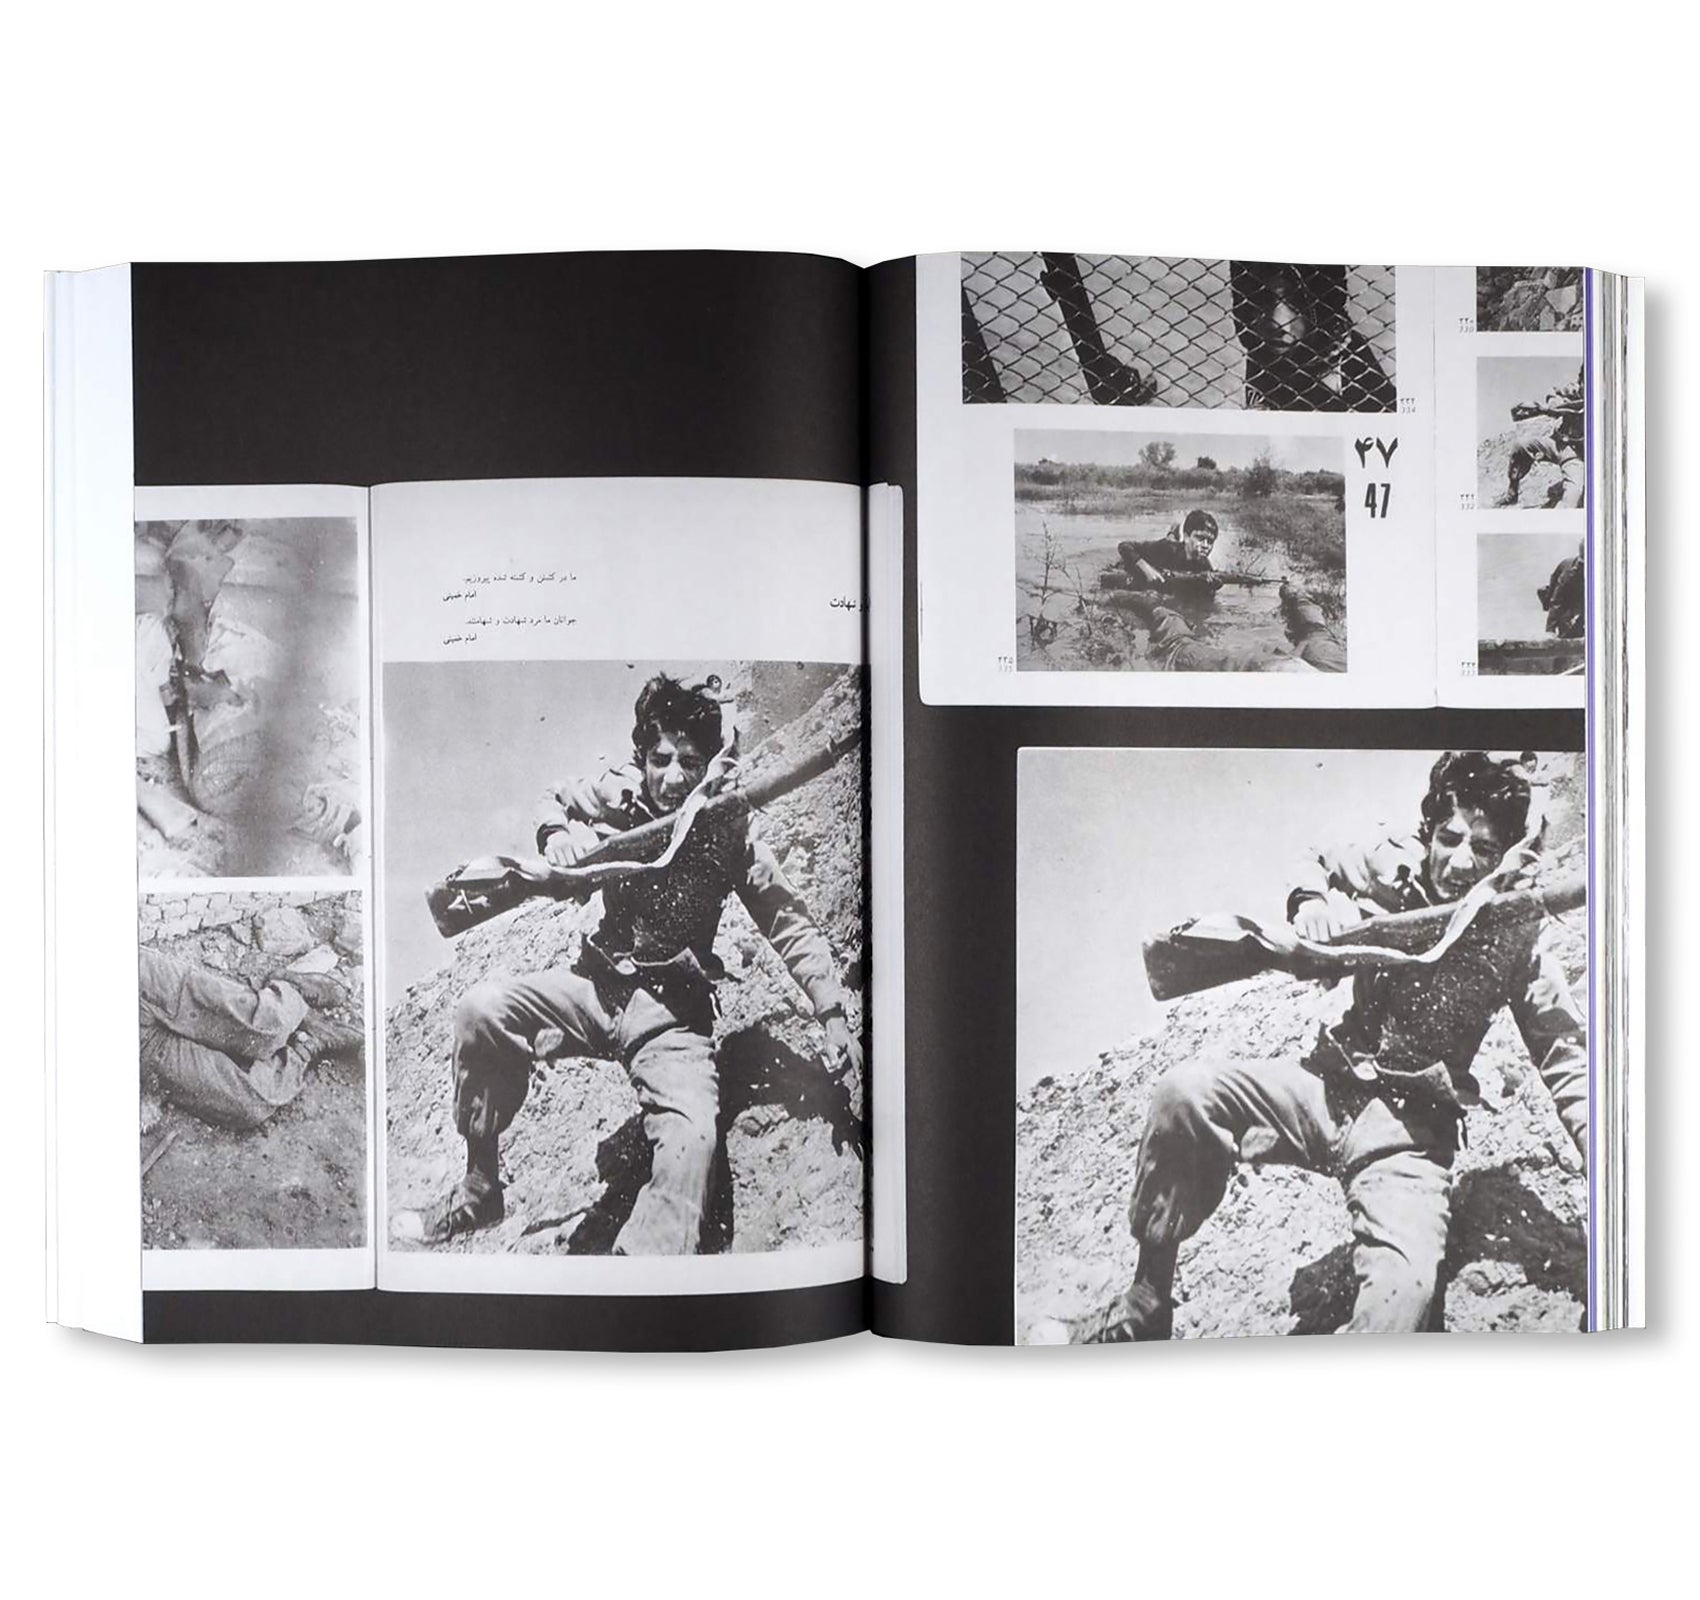 ENGHELAB STREET, A REVOLUTION THROUGH BOOKS: IRAN 1979-1983 by Hannah Darabi